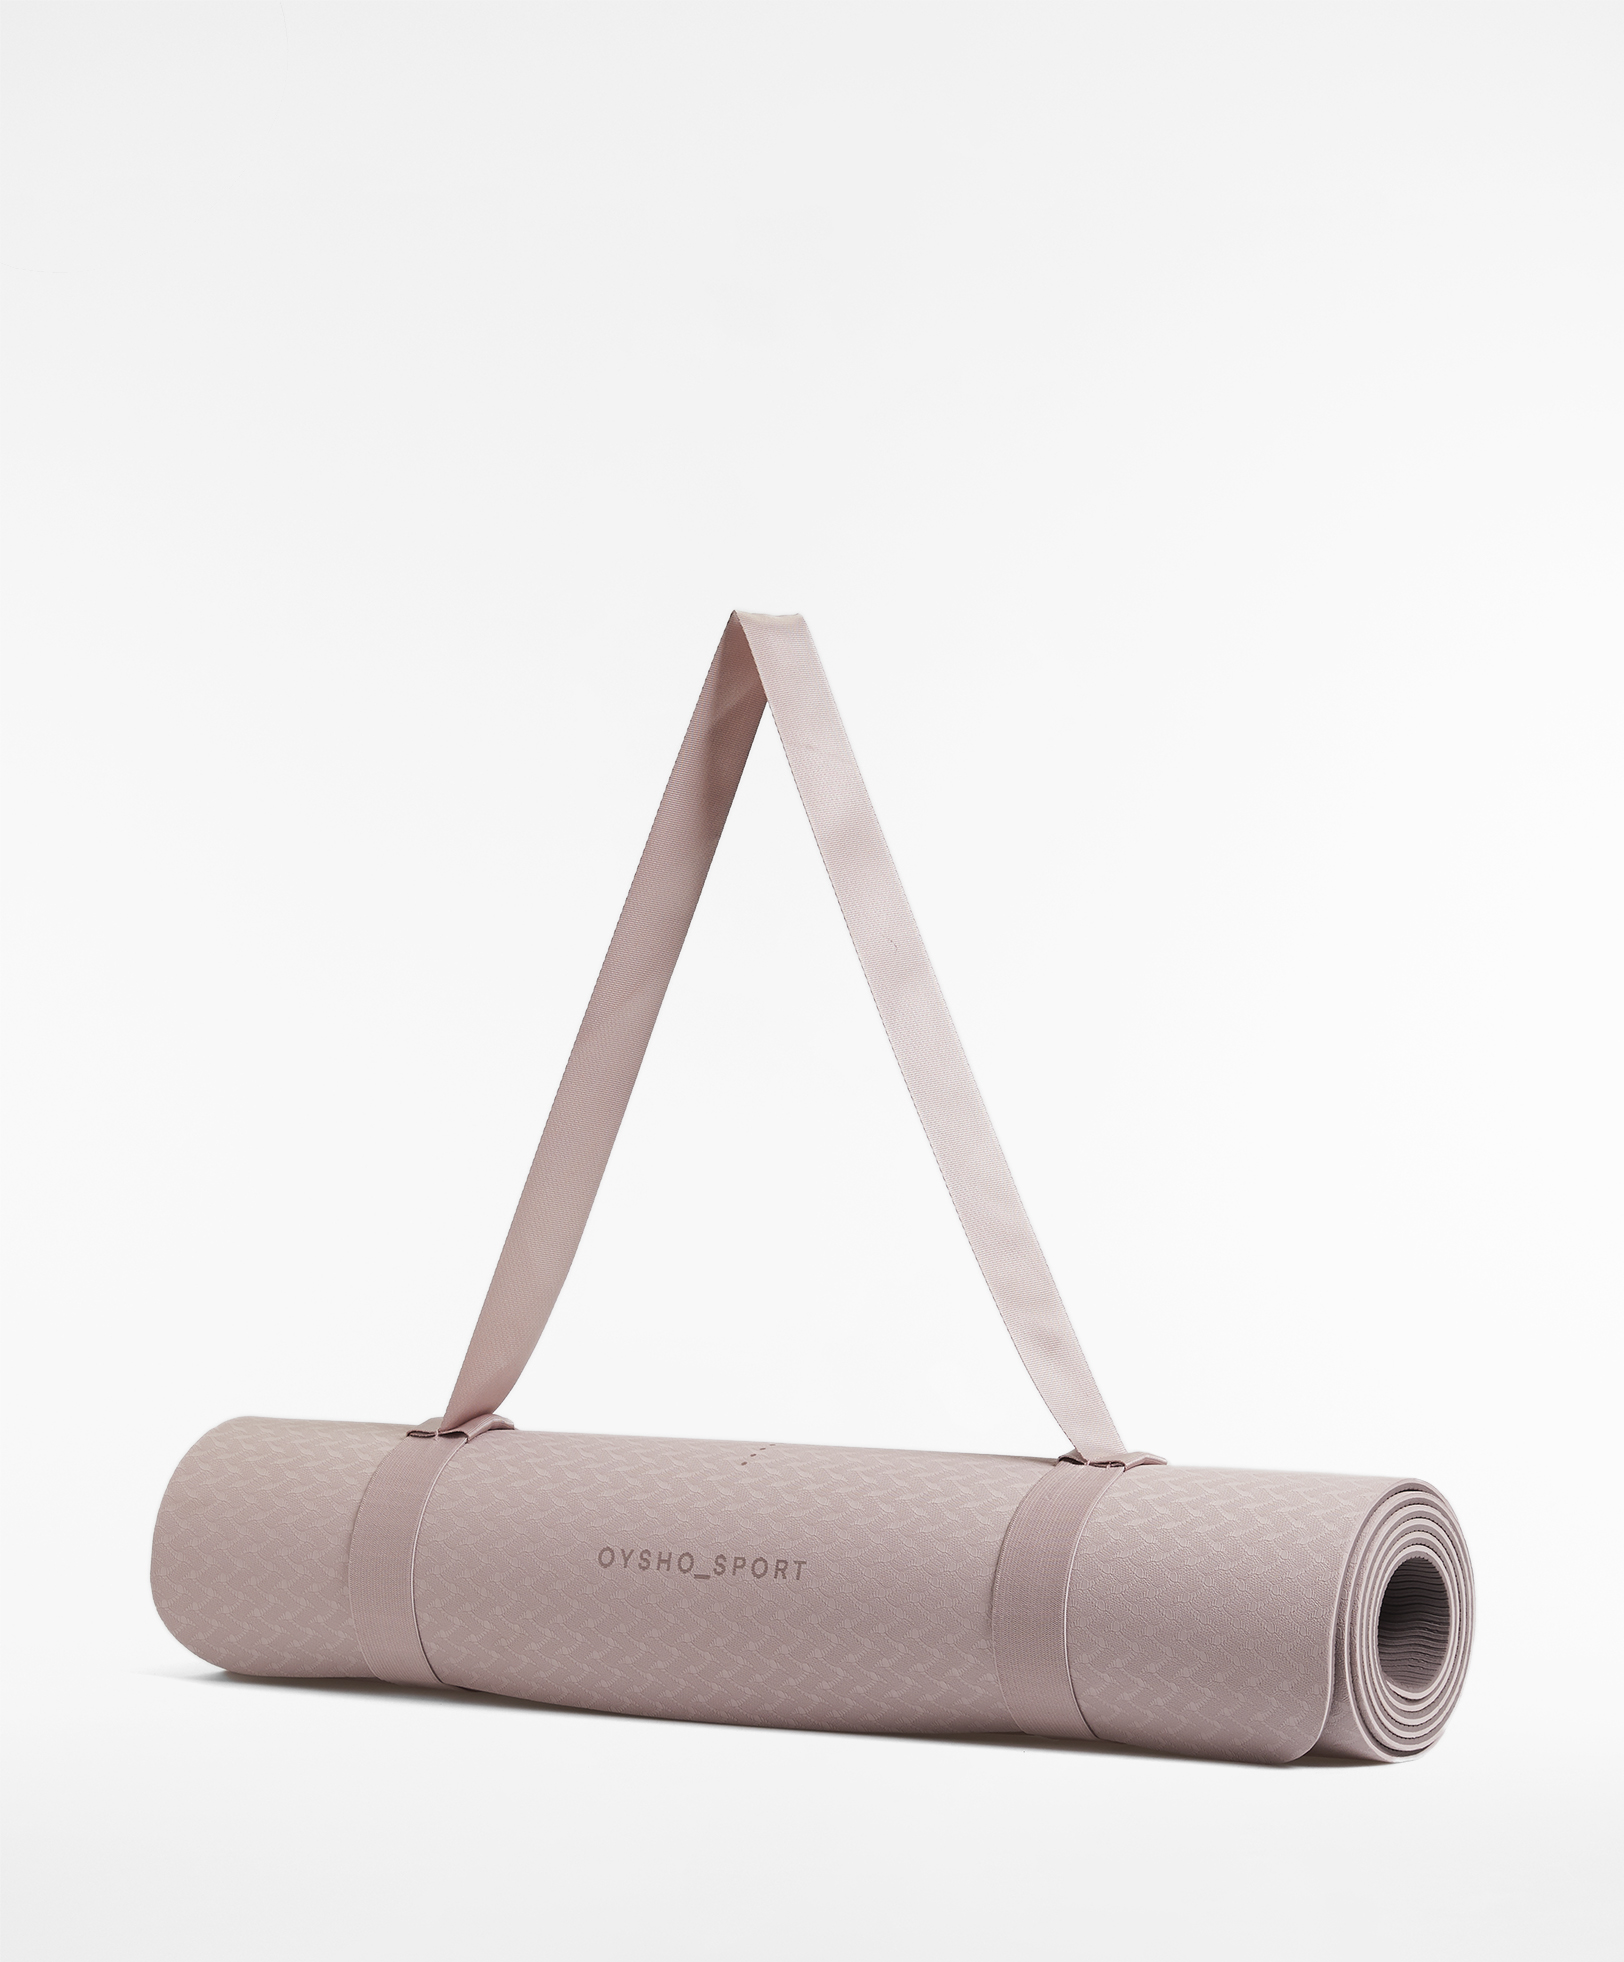 Vitos® 5mm Yoga Mat – Vitos® Lifestyle